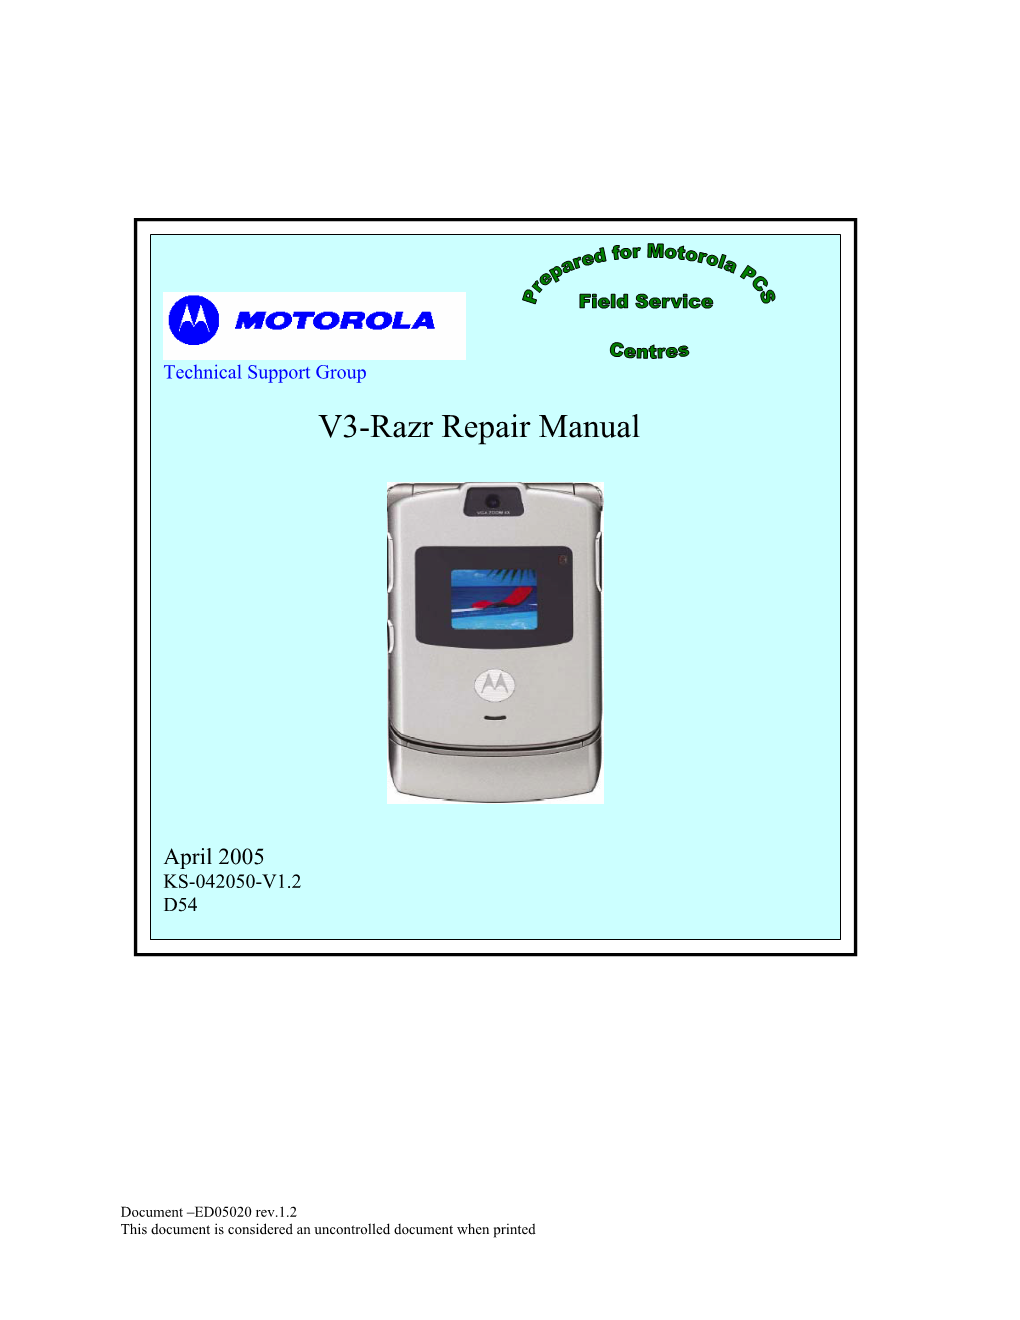 Motorola V3-Razr Repair Manual KS-042050-V1.2.Pdf